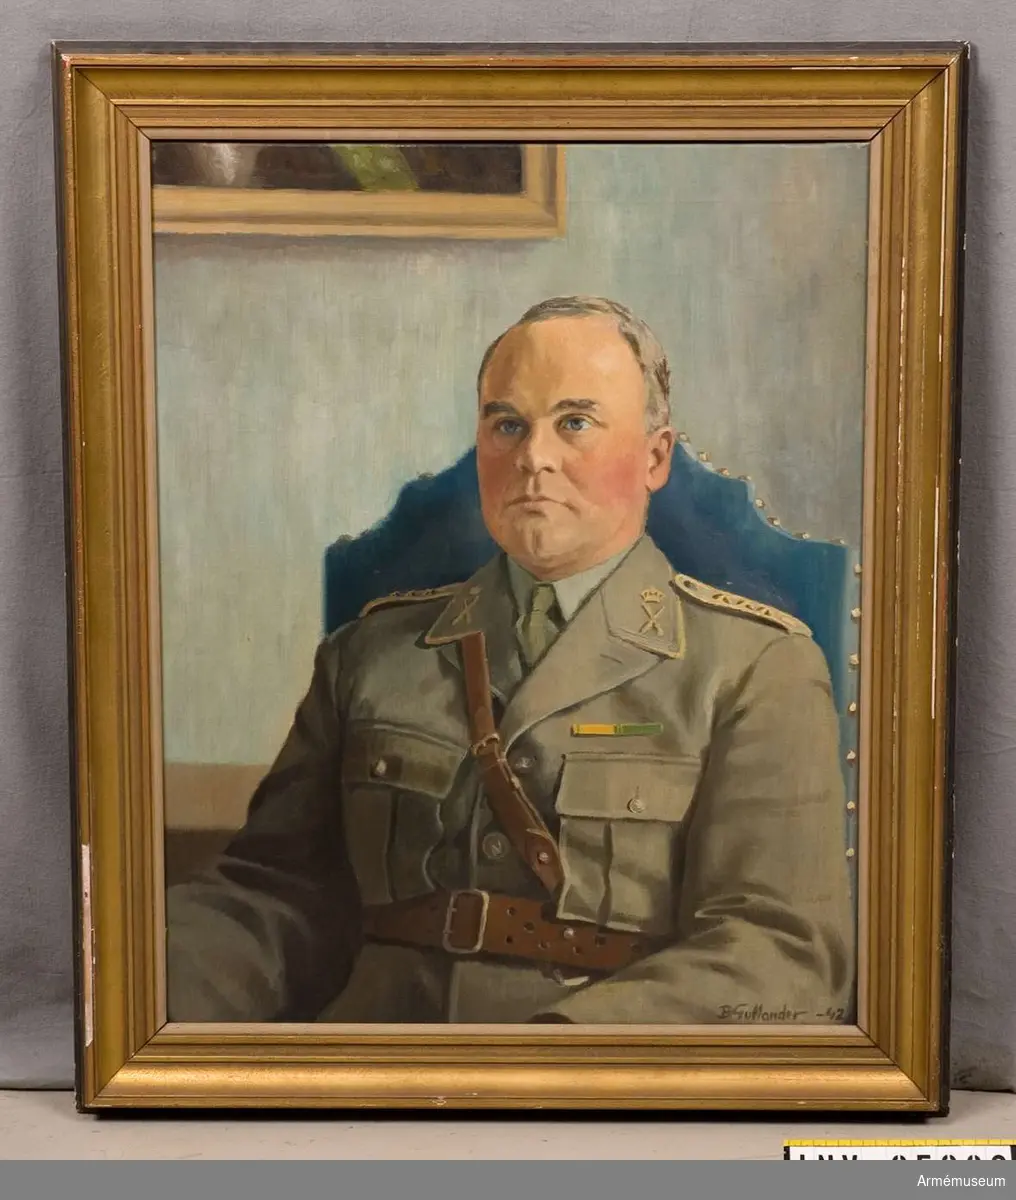 Grupp M I.
Porträtt föreställande P. D. A. Janse, avgående chef för Gotlands regemente, utfört av Bertil Gullander 1942.
Samhörande oljeförgylld träram.